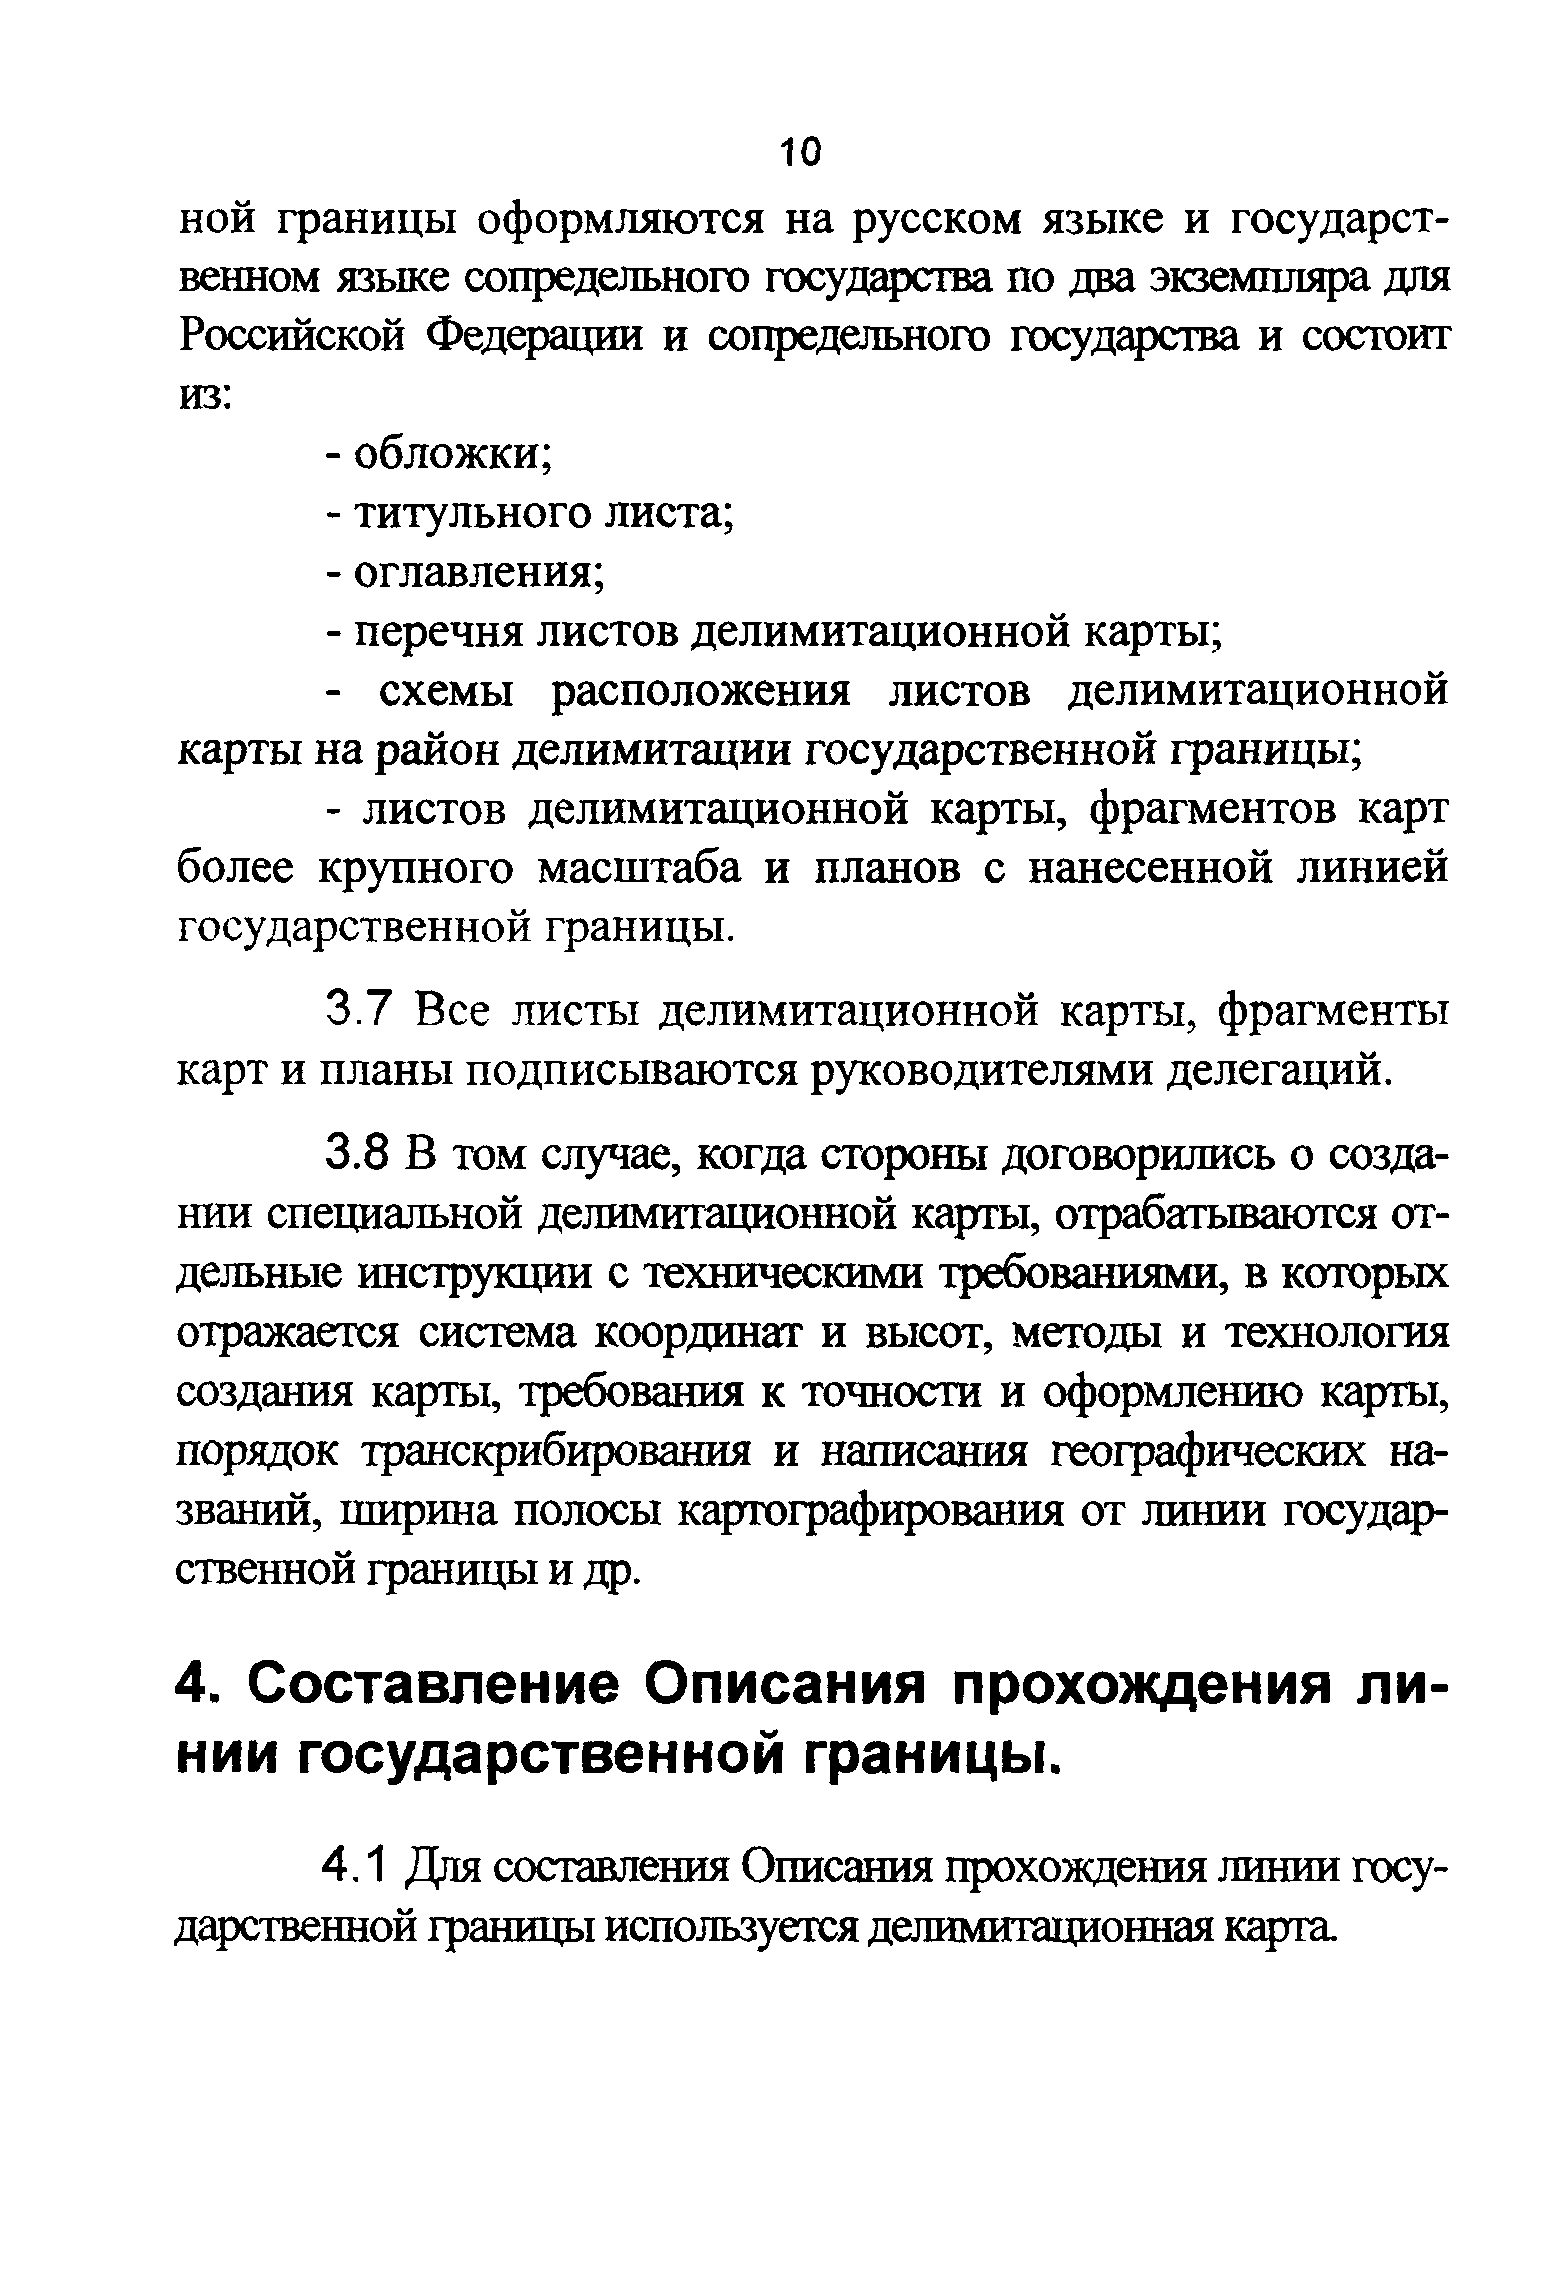 ГКИНП 05-255-01